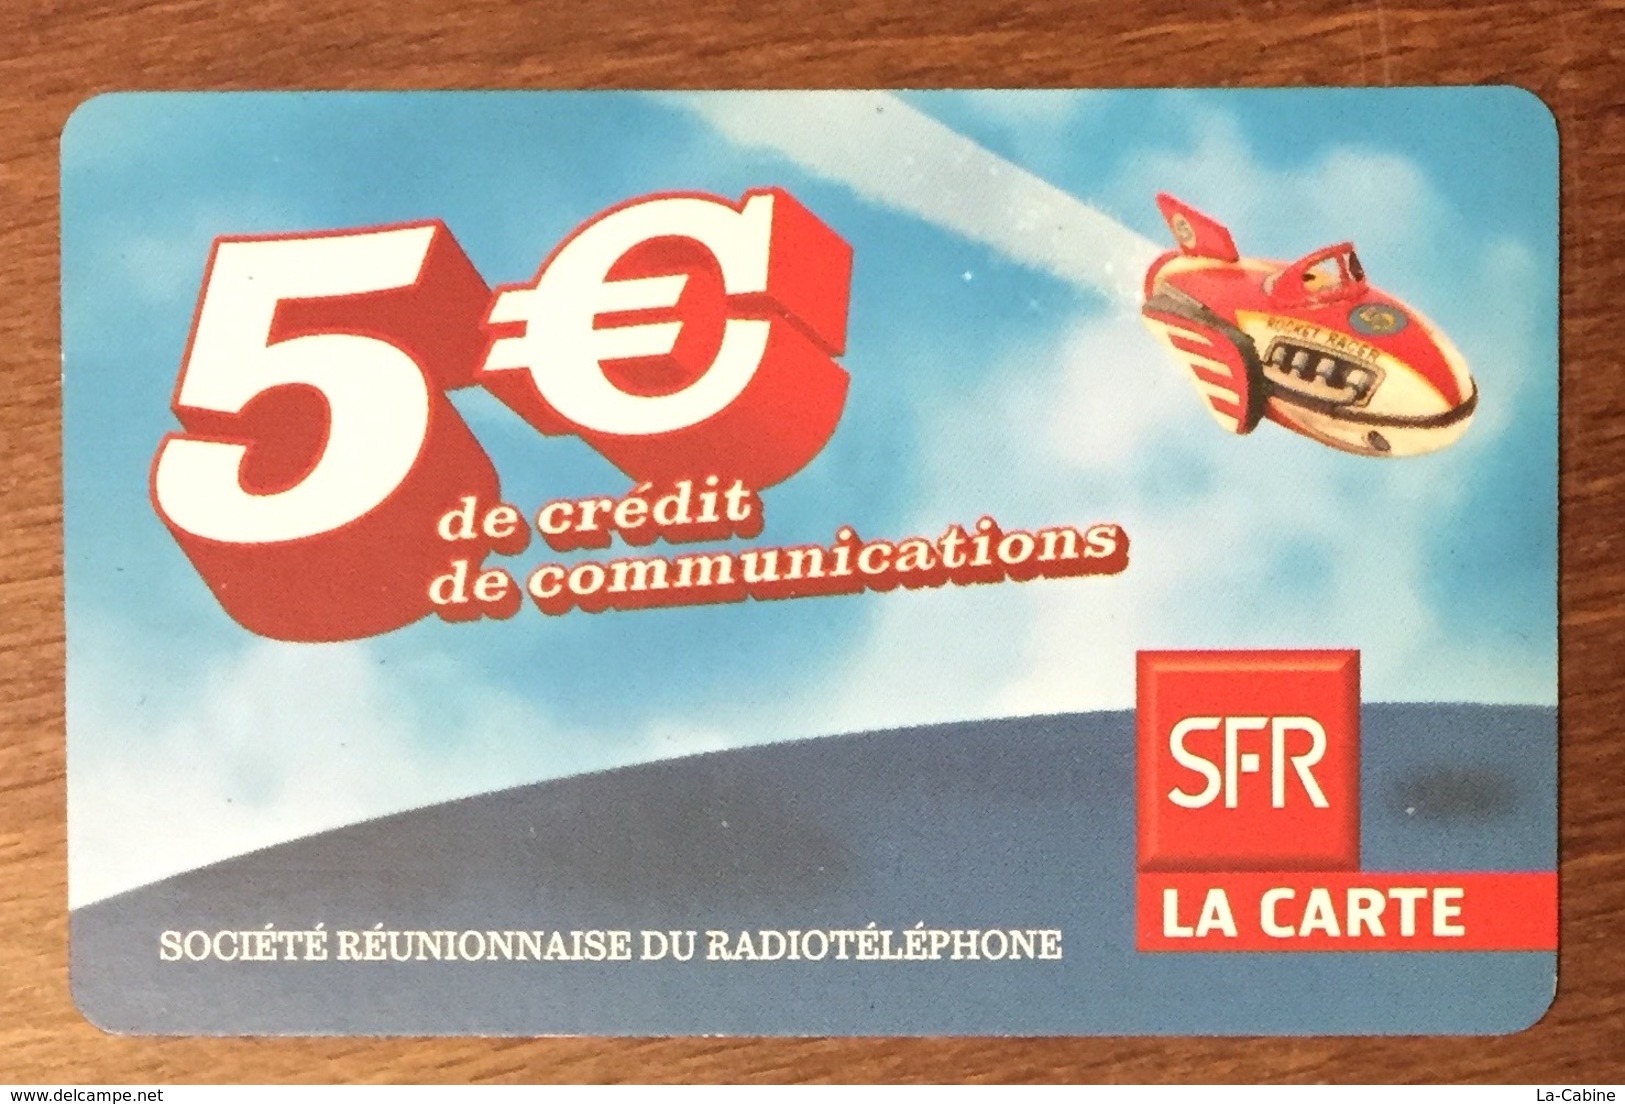 RÉUNION NAVIRE RECHARGE GSM SFR 5 EURO DU 06/11 CARTE PRÉPAYÉE PHONECARD CARD PAS TÉLÉCARTE - Réunion